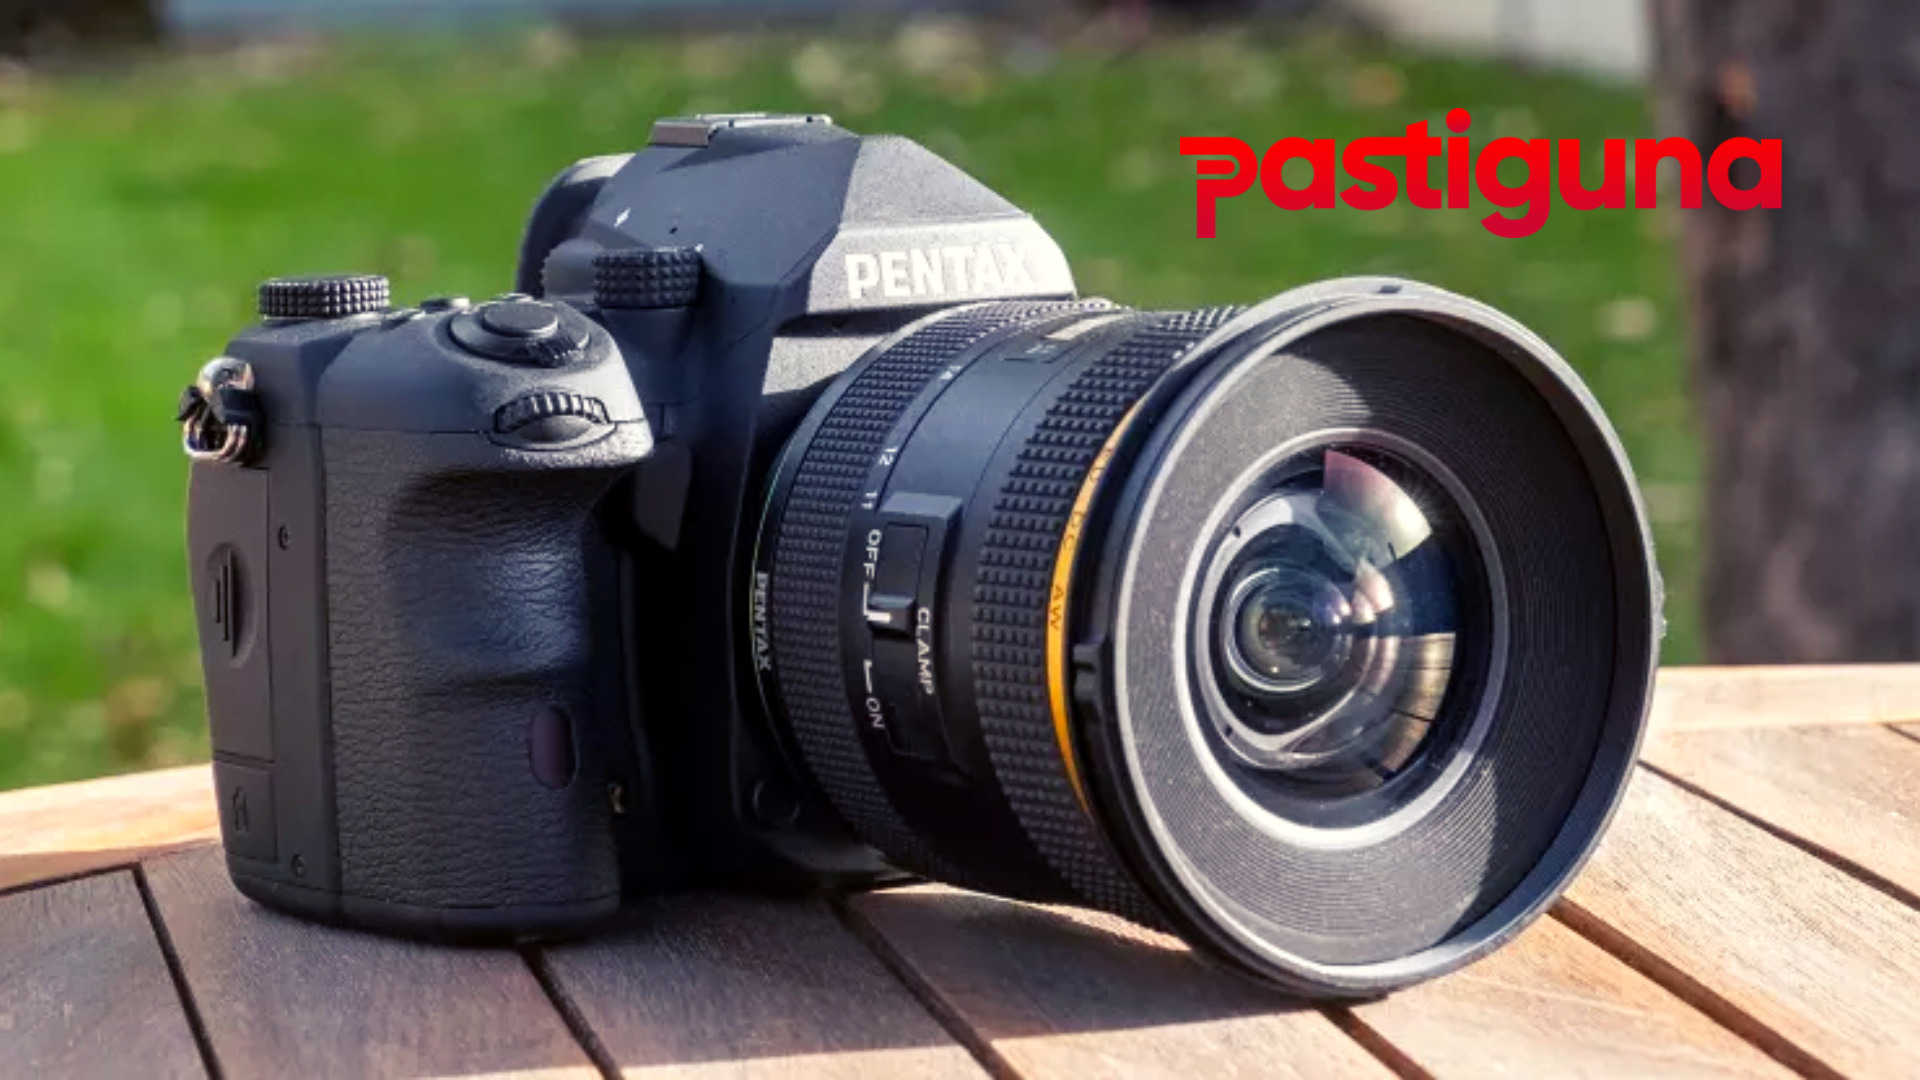 Review Pentax K-3 III, DSLR Penghasil Gambar yang Bagus